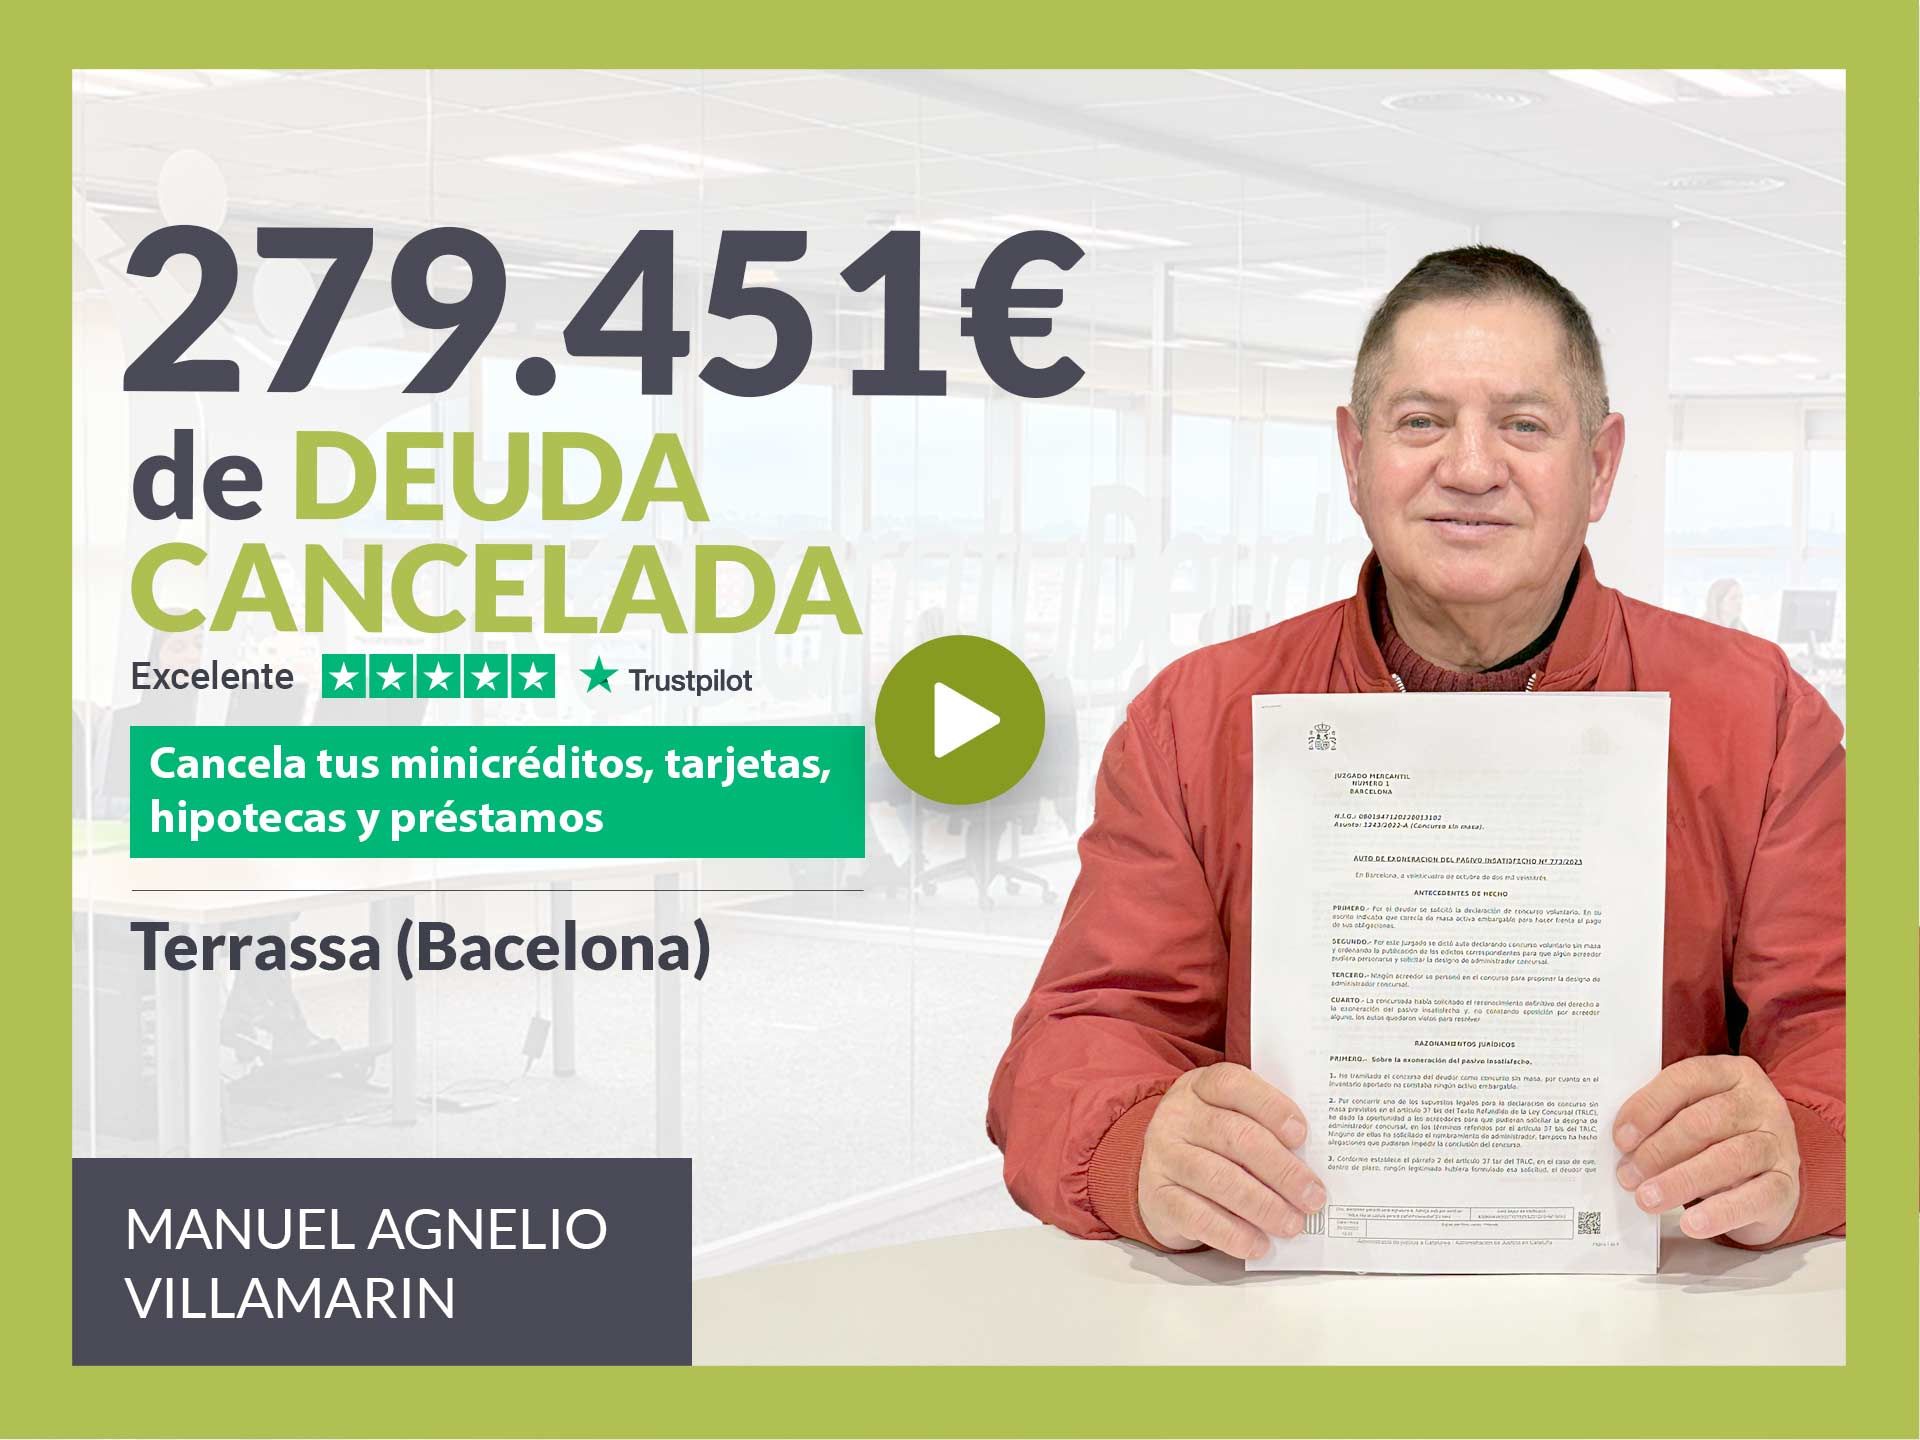 Repara tu Deuda Abogados cancela 279.451? en Terrassa (Barcelona) con la Ley de Segunda Oportunidad